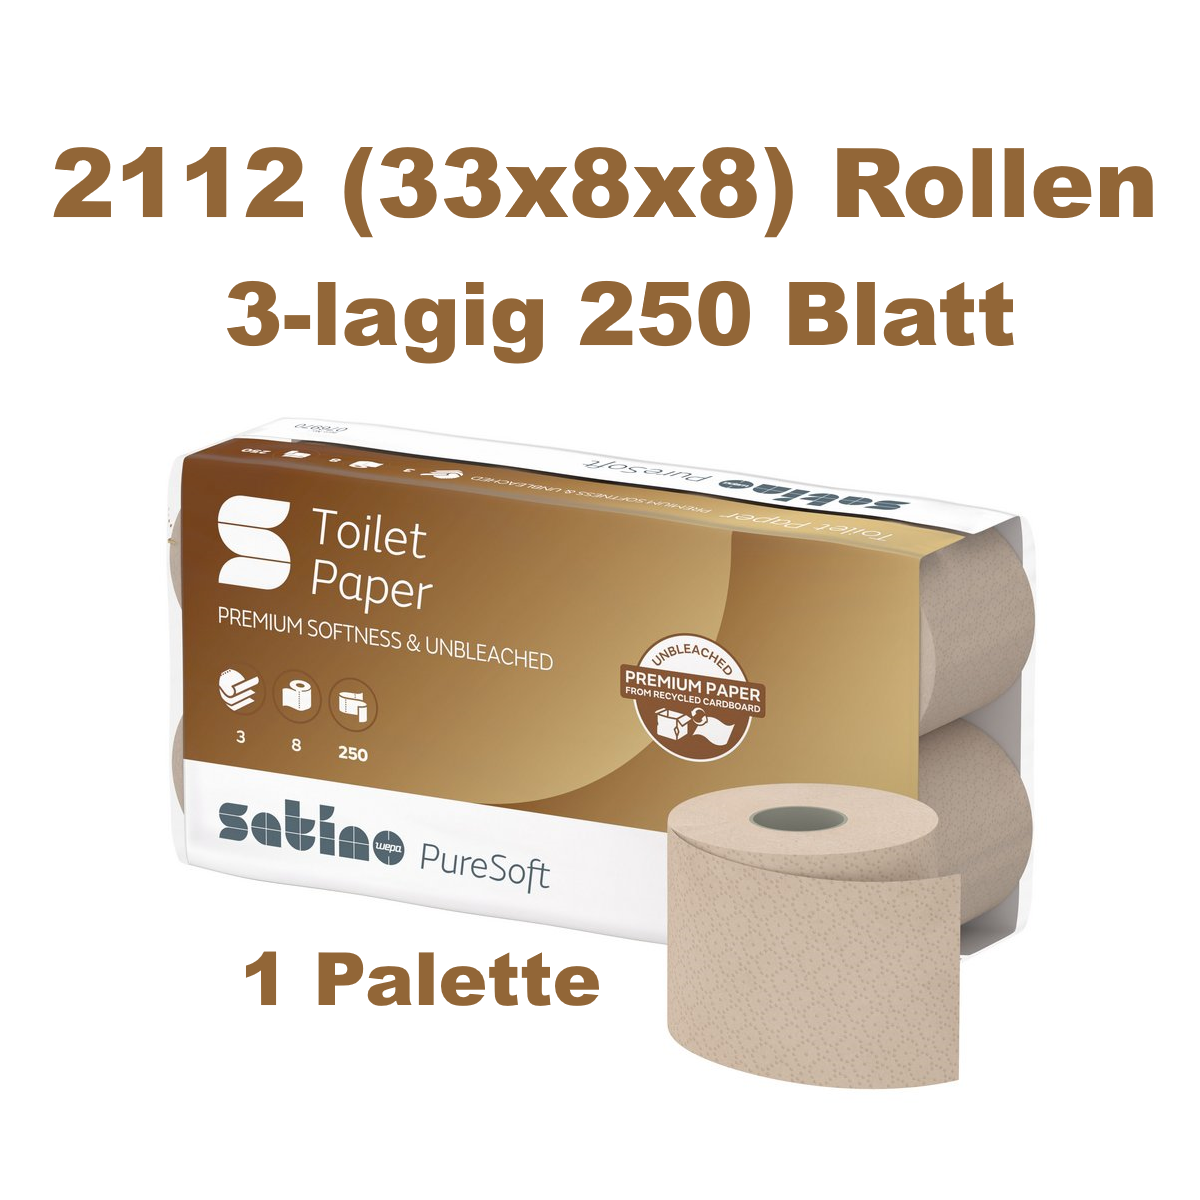 2112 Rollen Satino 076970 PureSoft Toilettenpapier Kleinrollen 3-lagig - 1 Palette